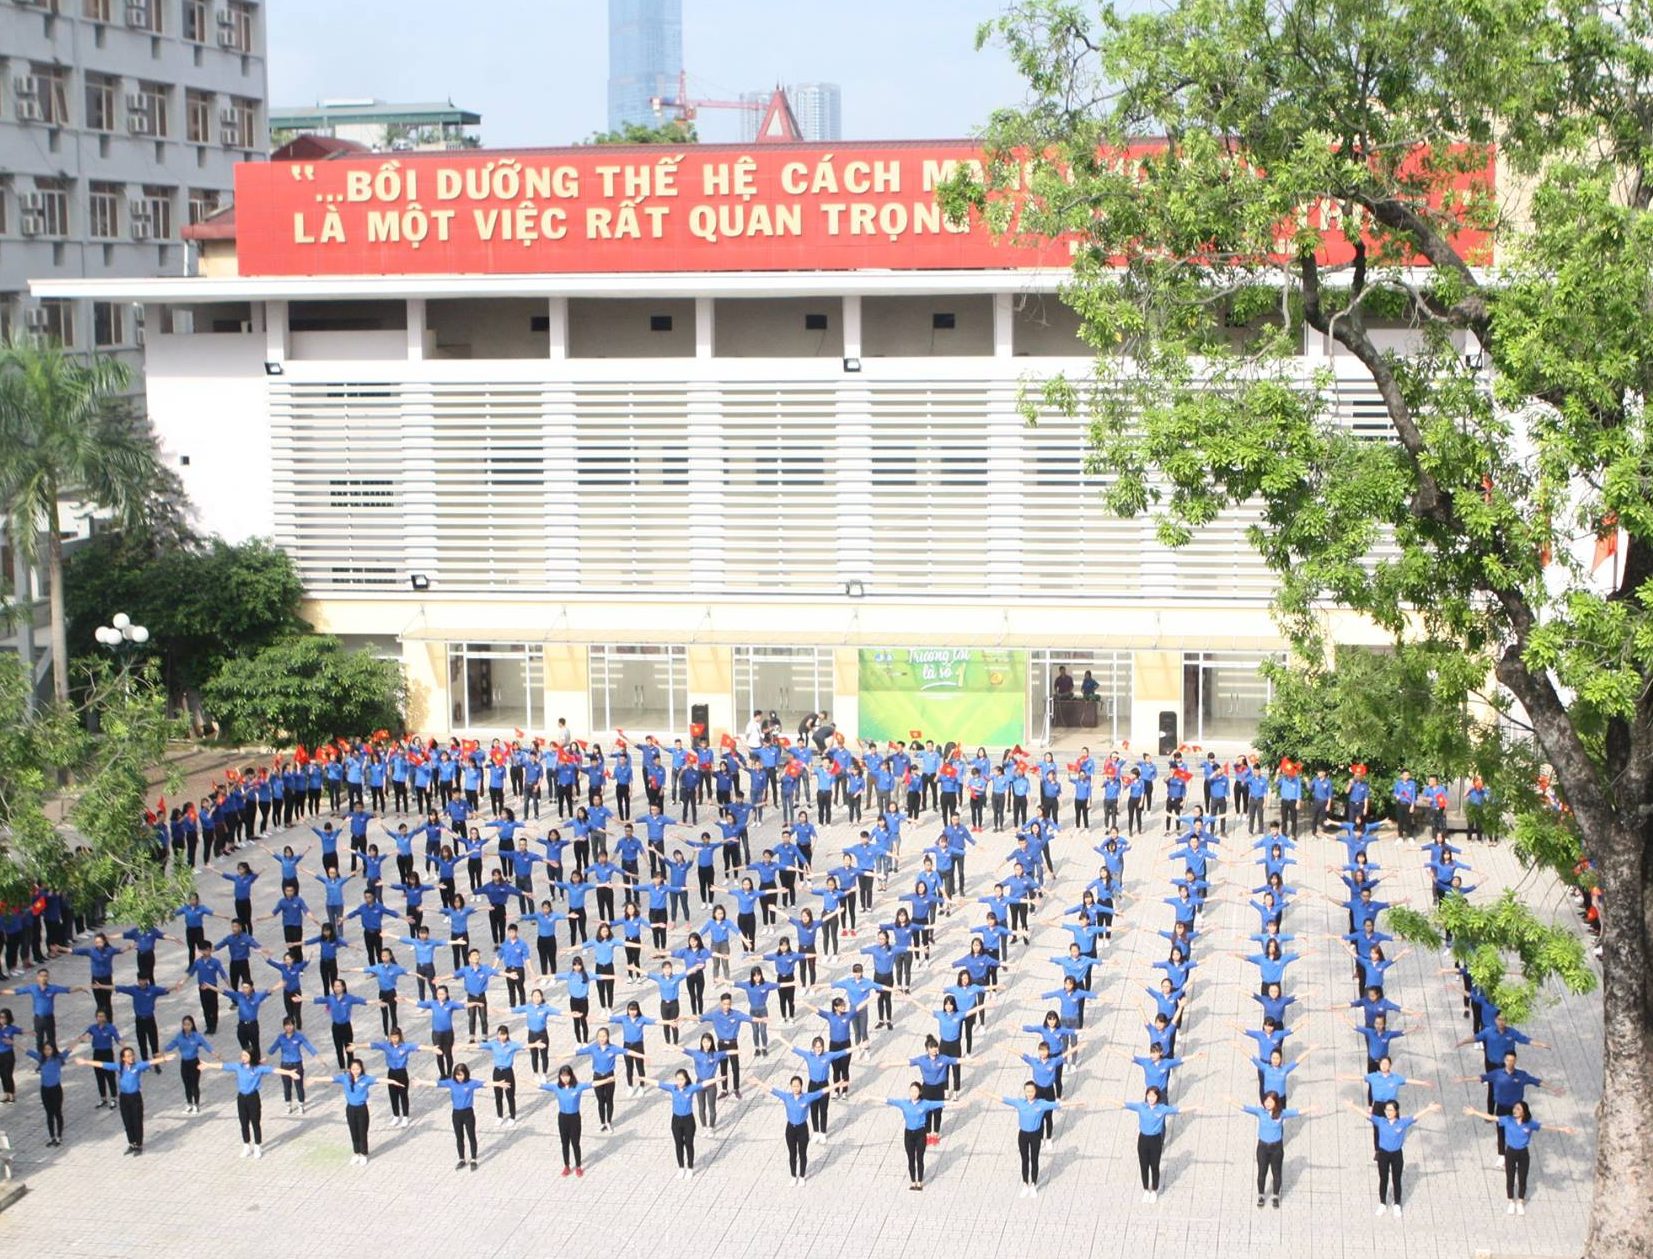 Điểm sàn Học viện Thanh Thiếu Niên Việt Nam năm 2020: 15 điểm trở lên